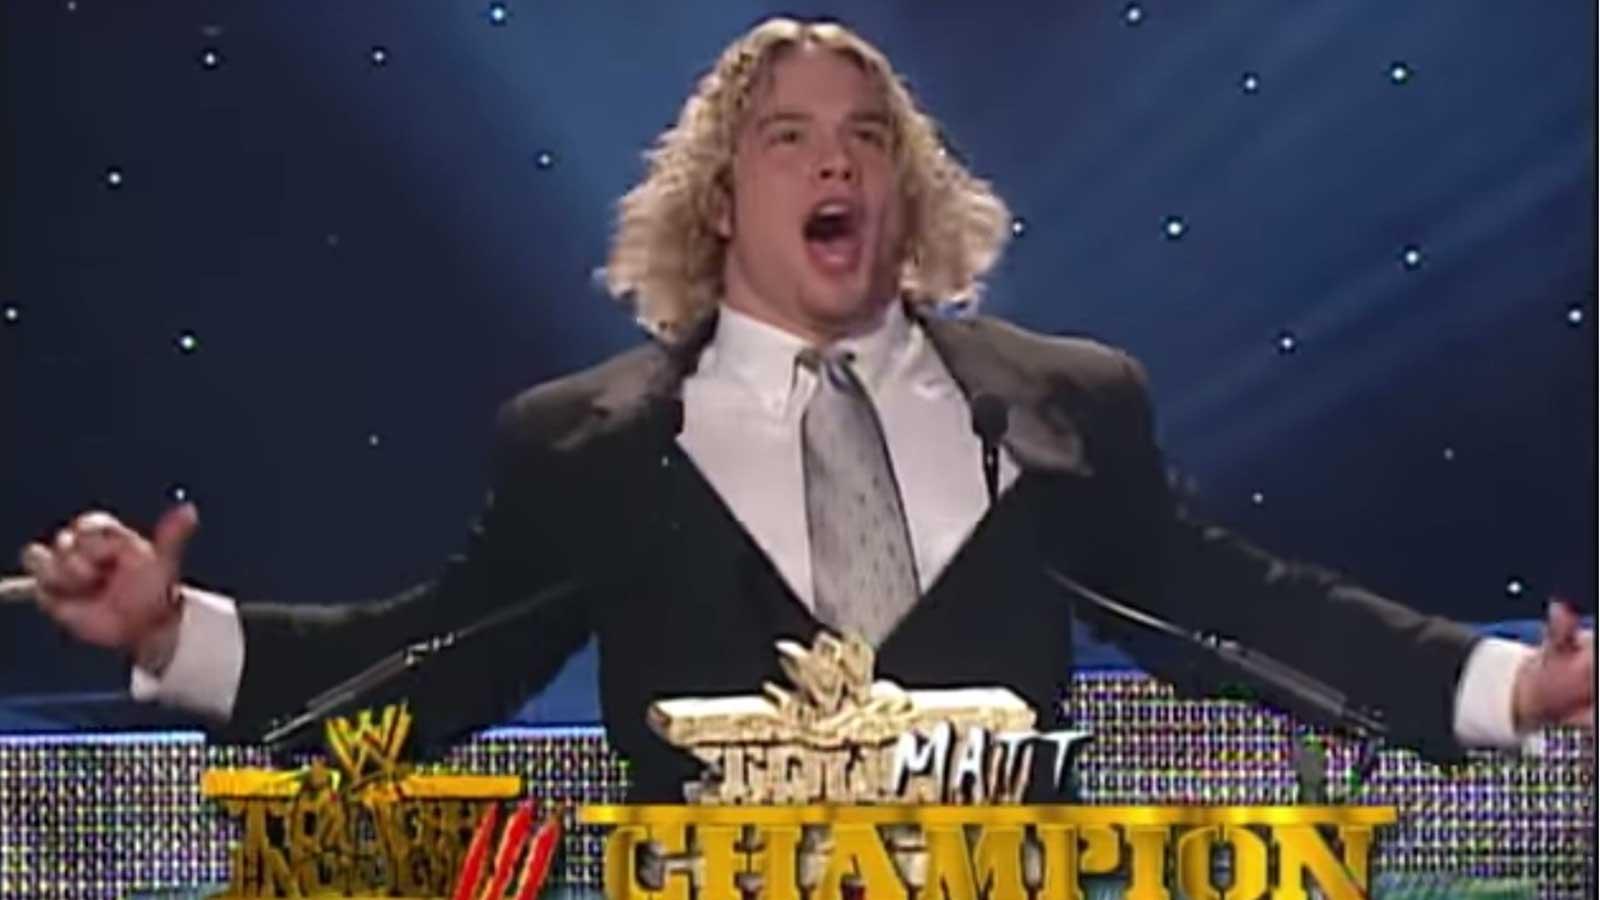 Matt Cappotelli prisas för segern i realityserien om wrestling ”Tough enough”.